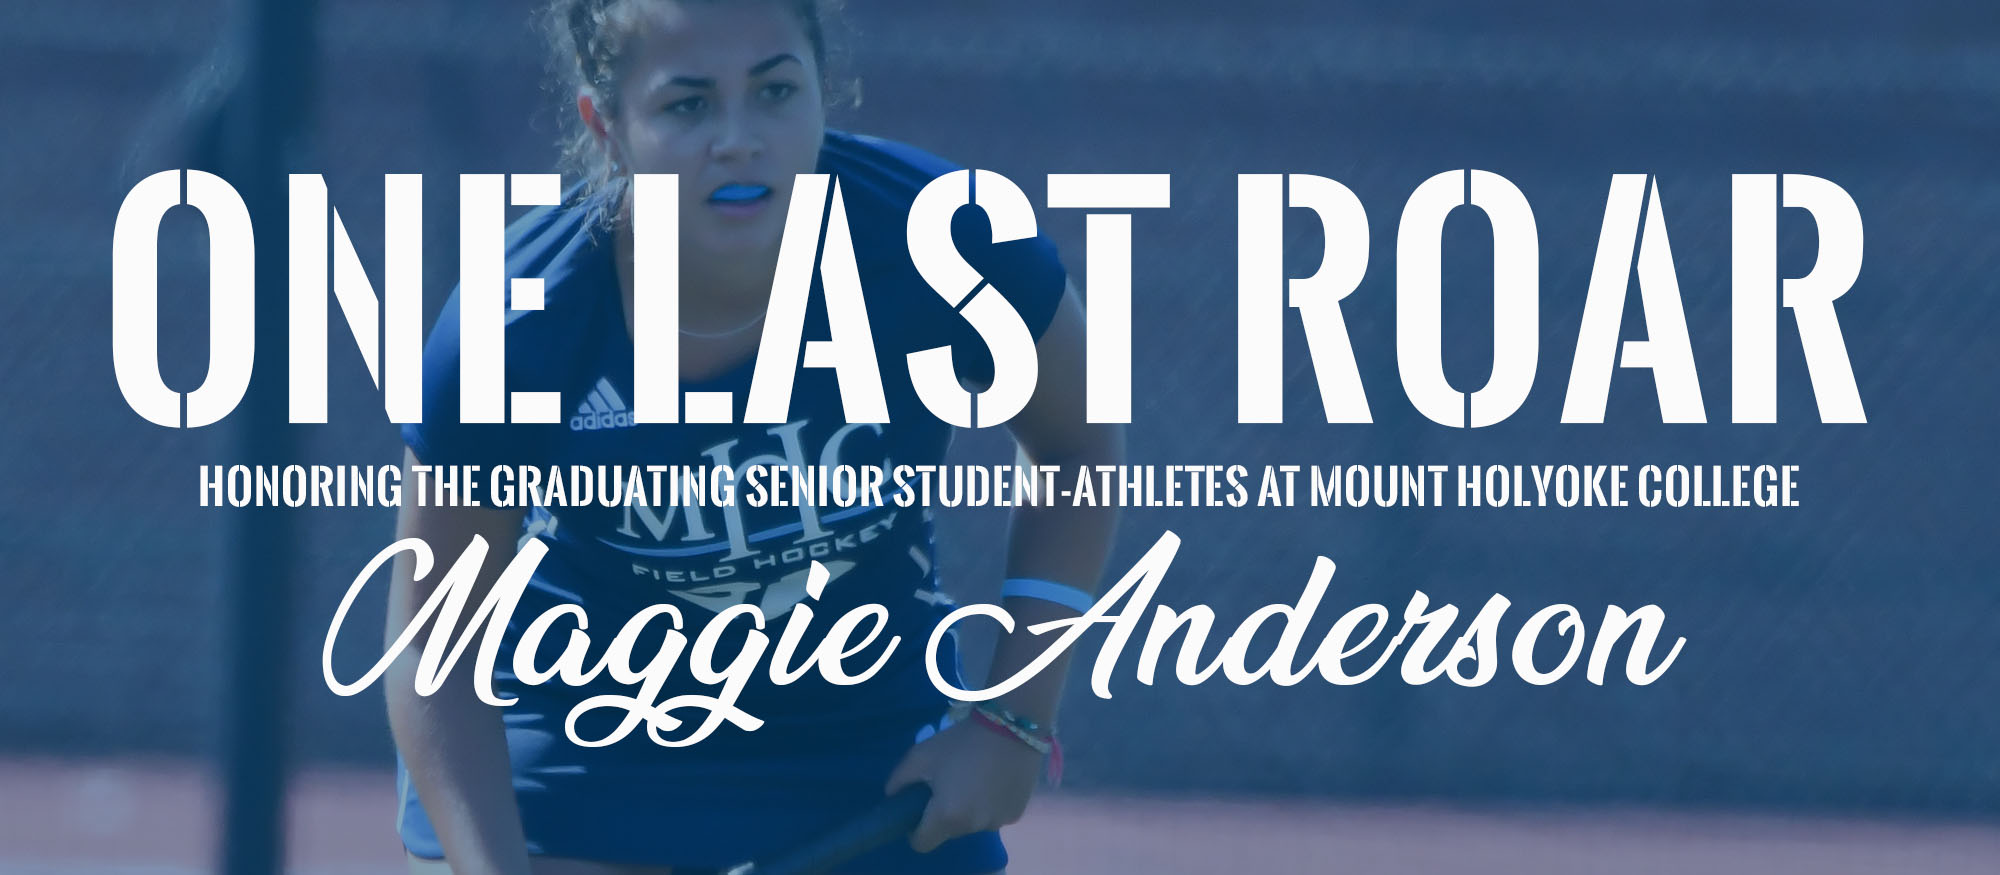 One Last Roar: Maggie Anderson, Field Hockey